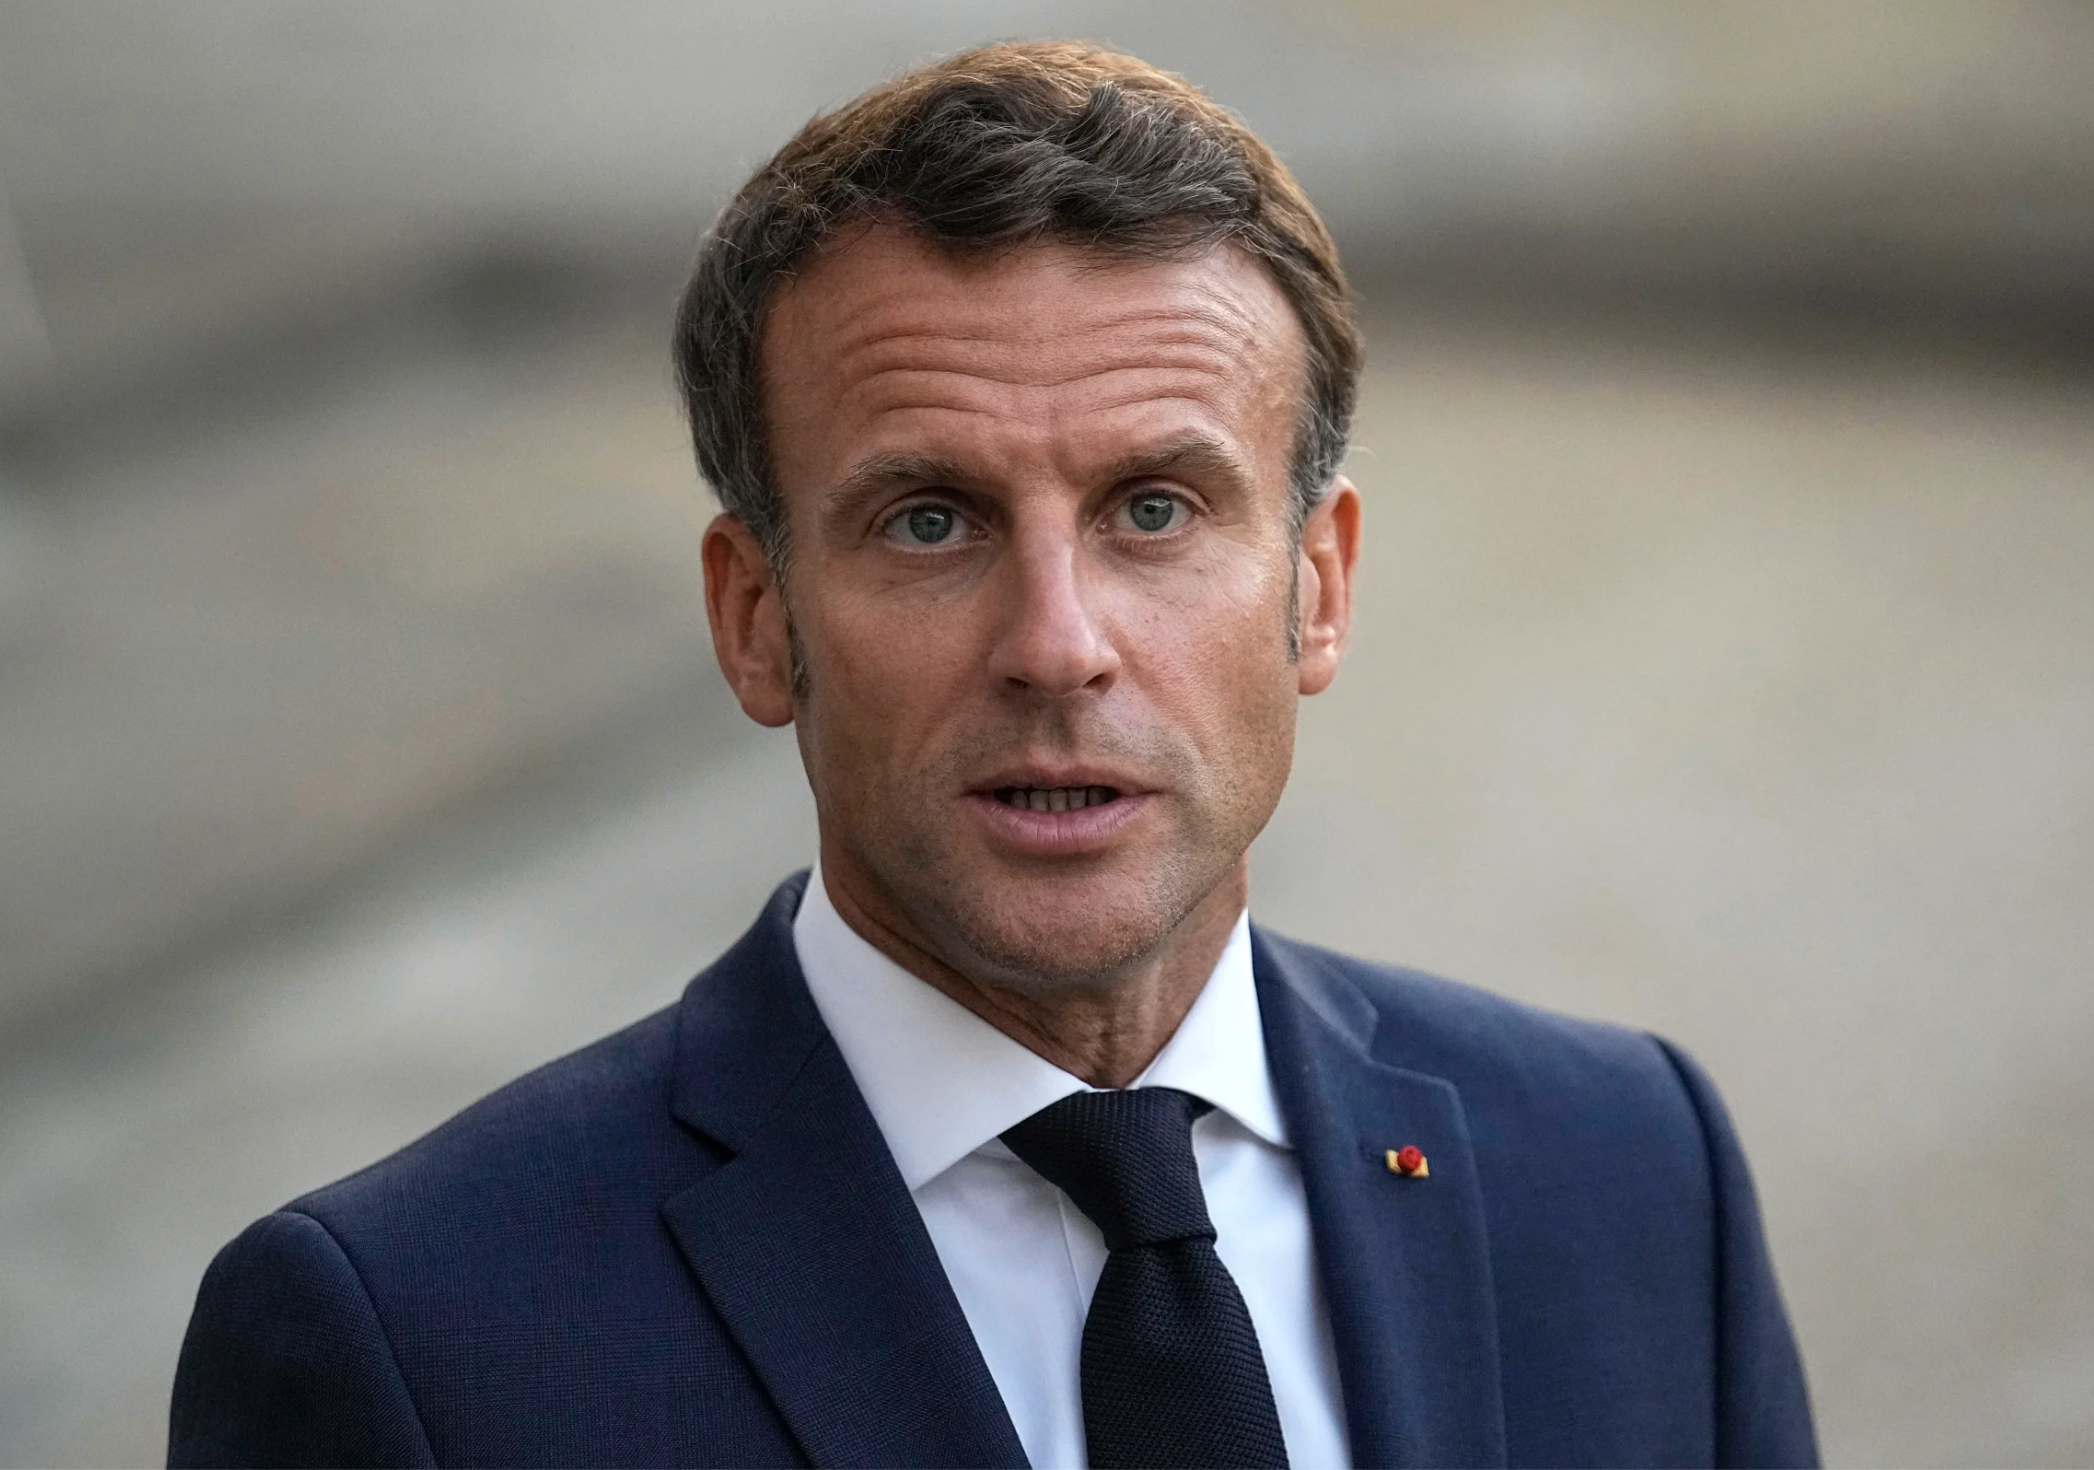 Image of French president Macron